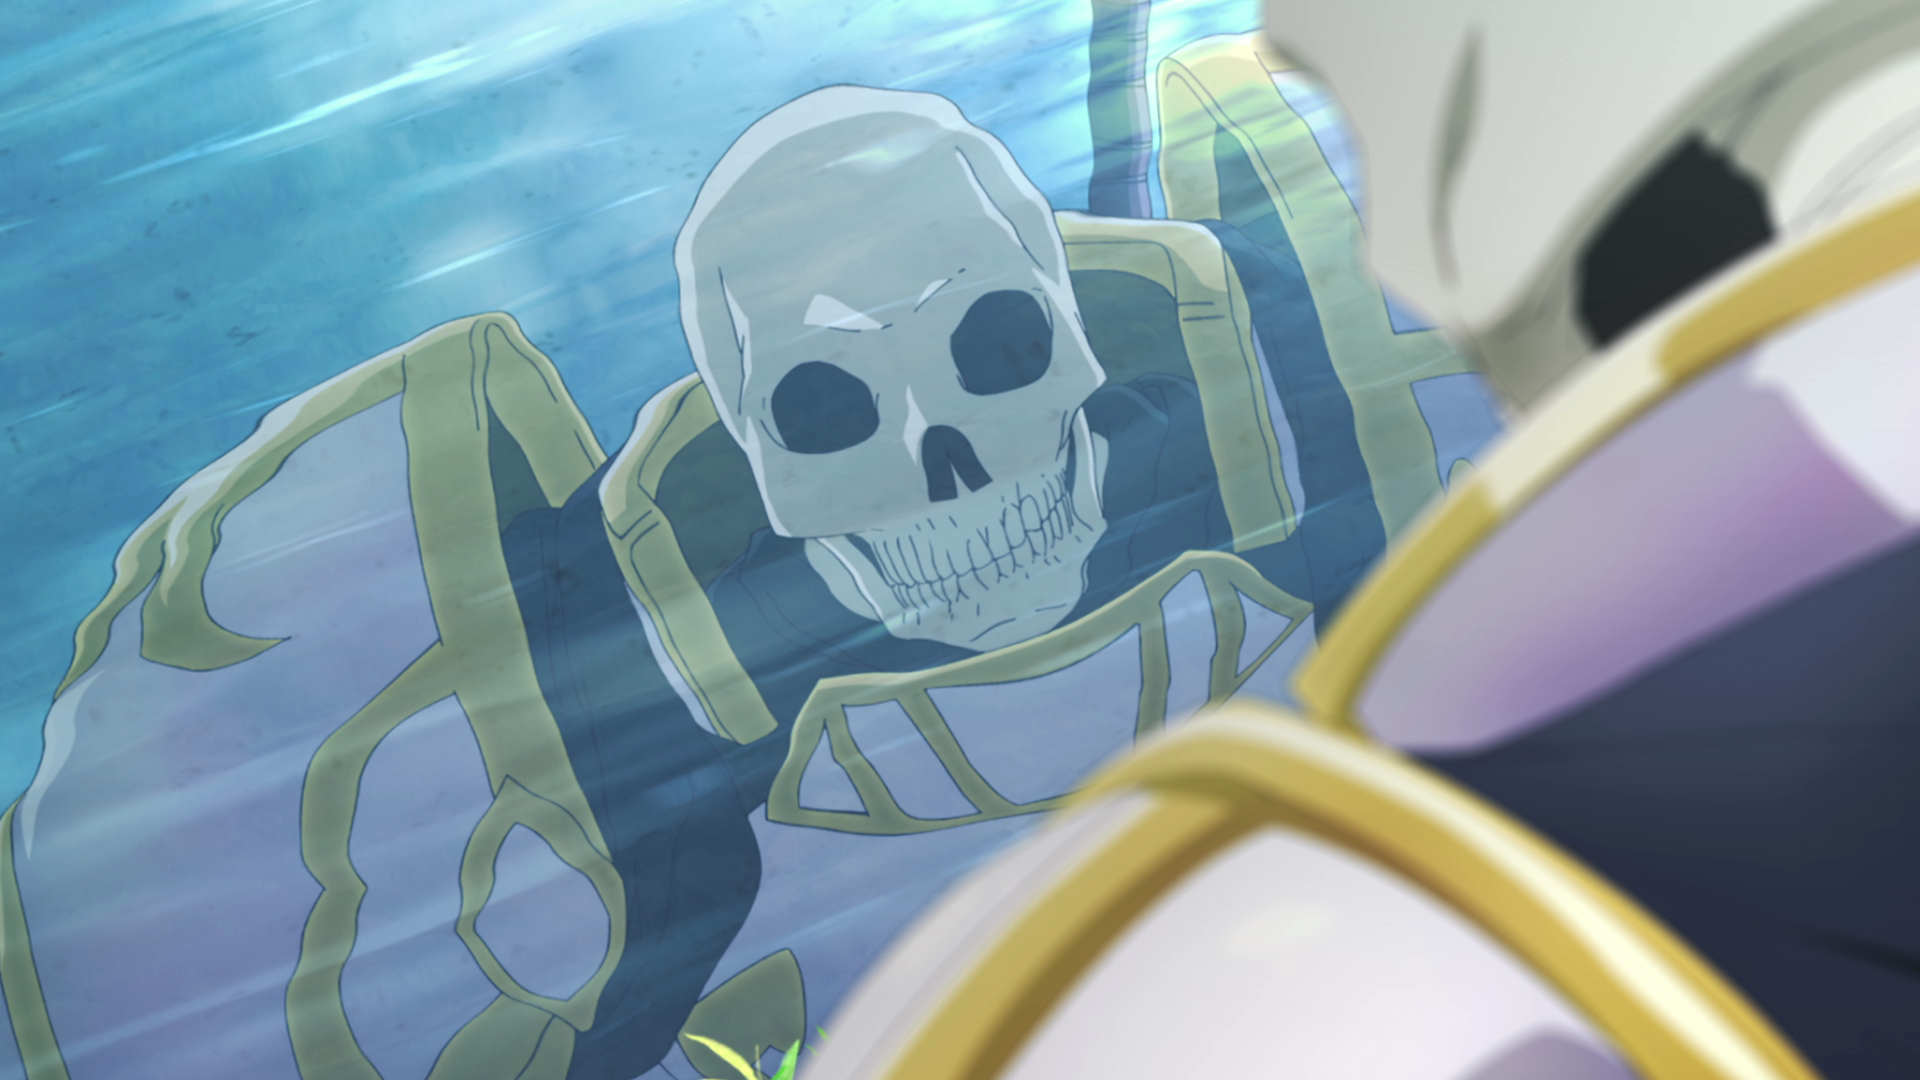 Skeleton Knight in Another World – Isekai com homem reencarnado em  esqueleto tem anuncio de anime com trailer - IntoxiAnime